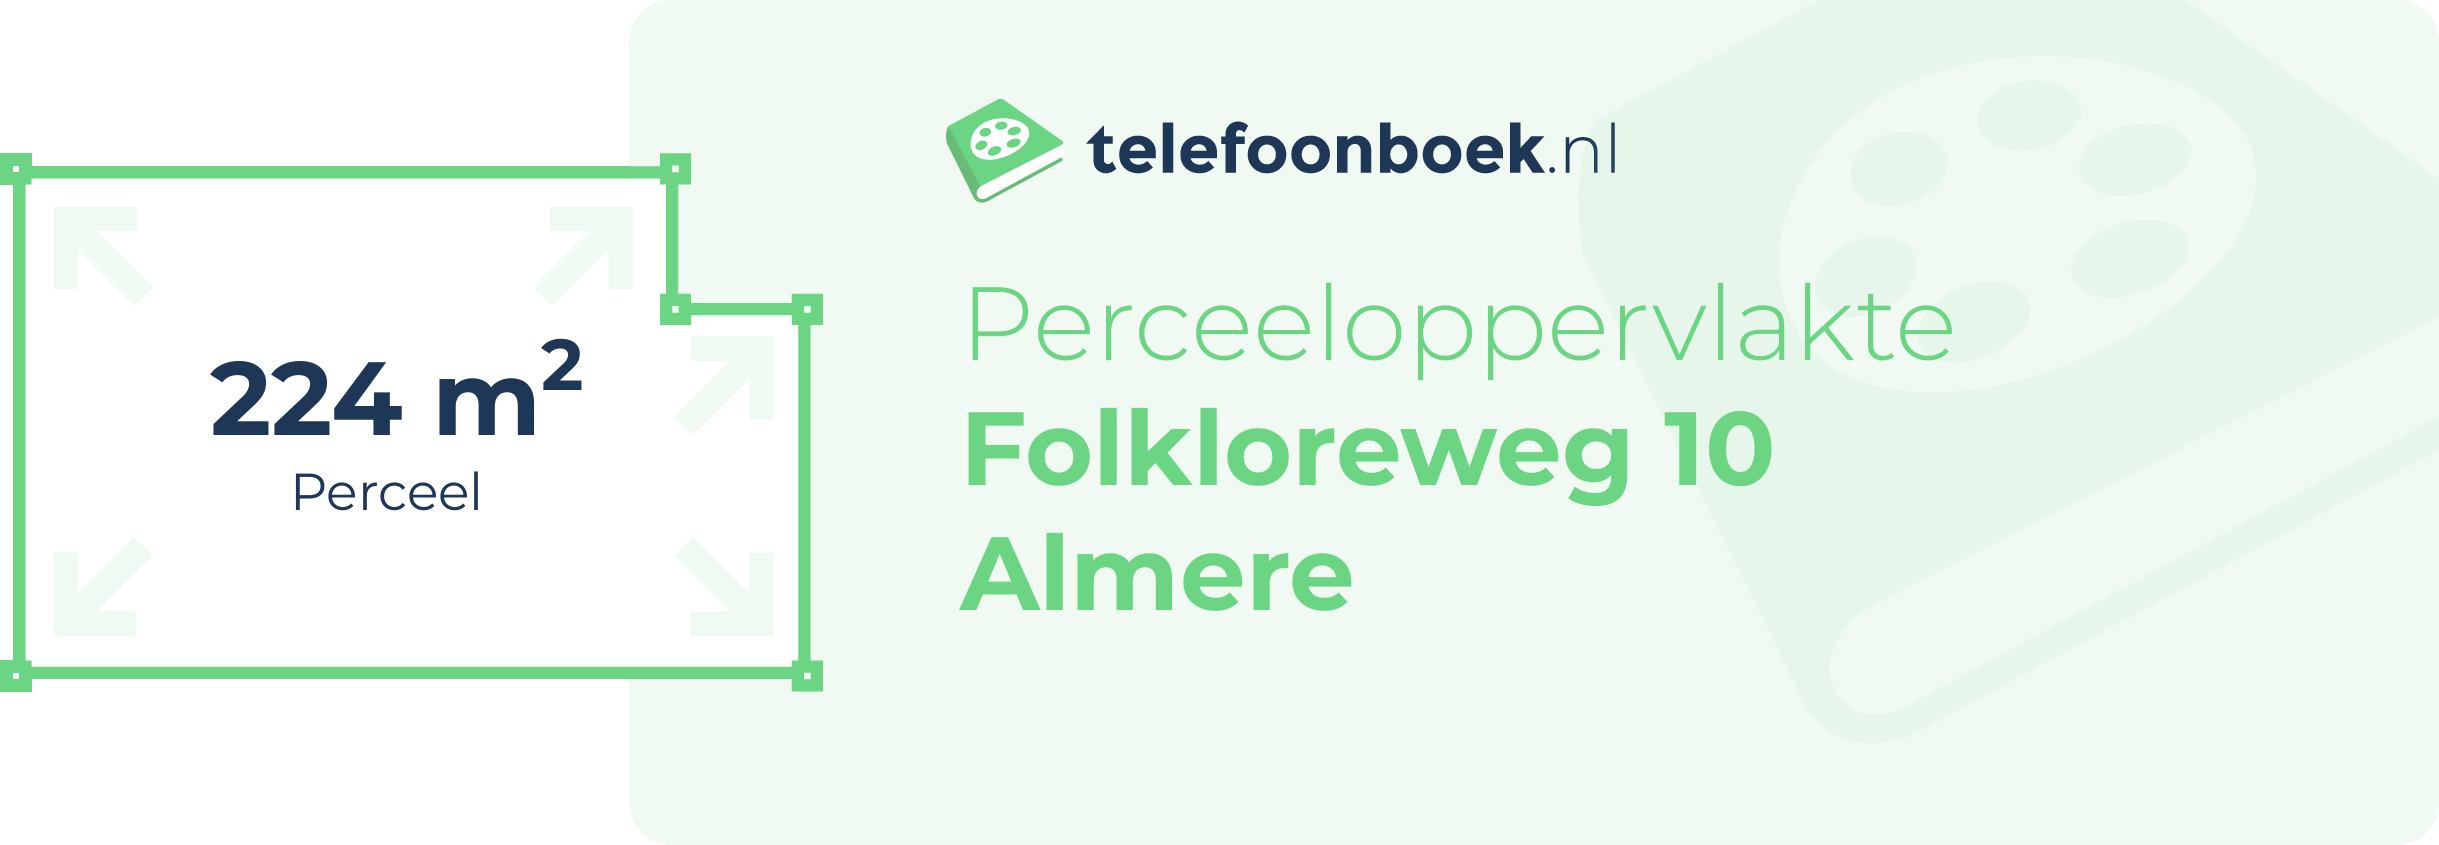 Perceeloppervlakte Folkloreweg 10 Almere